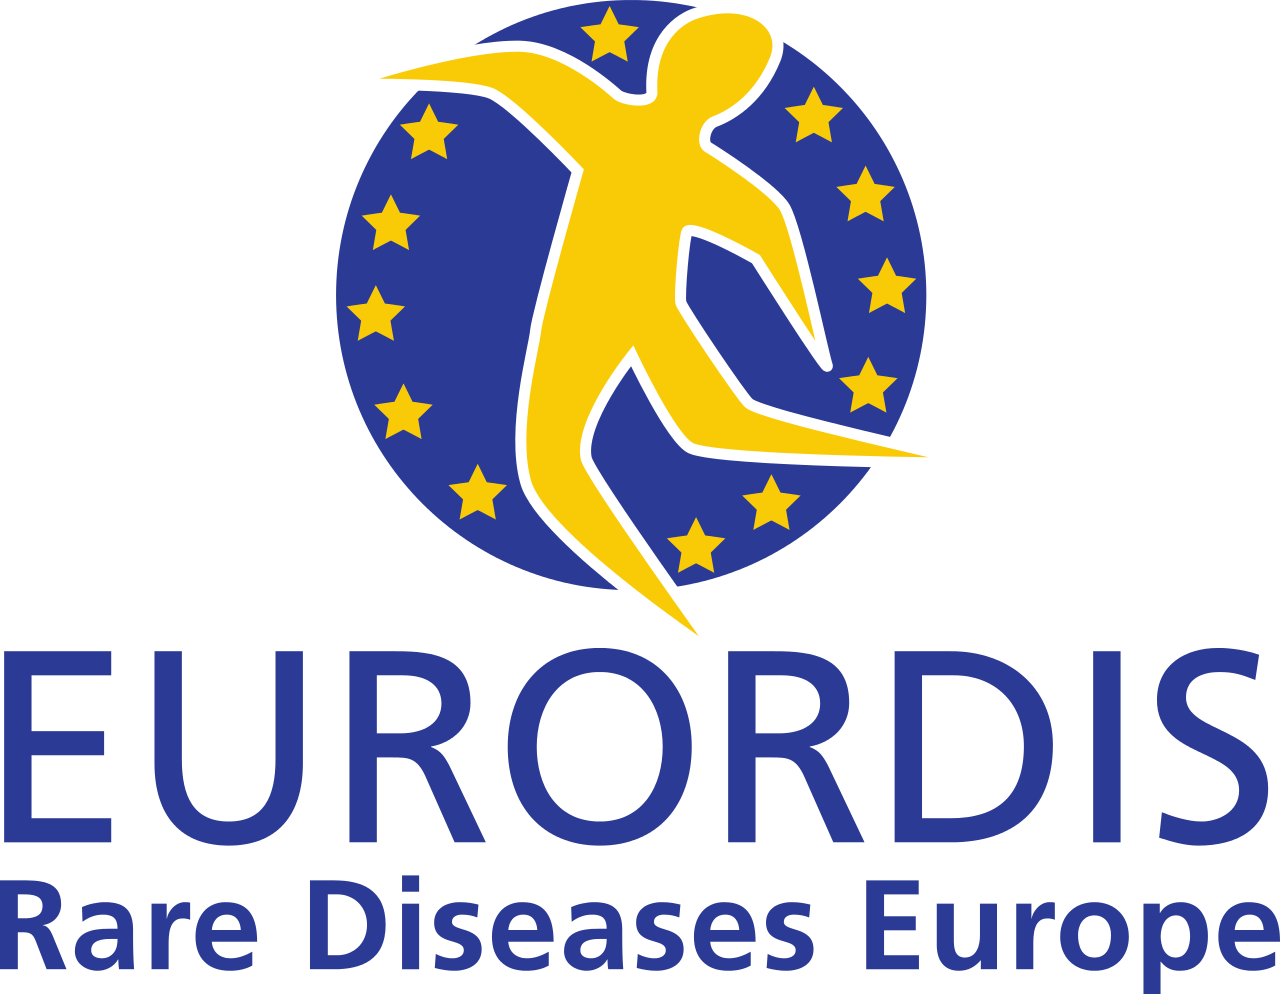 Enfermedades raras de Europa, EURORDIS (Rare Diseases Europe)